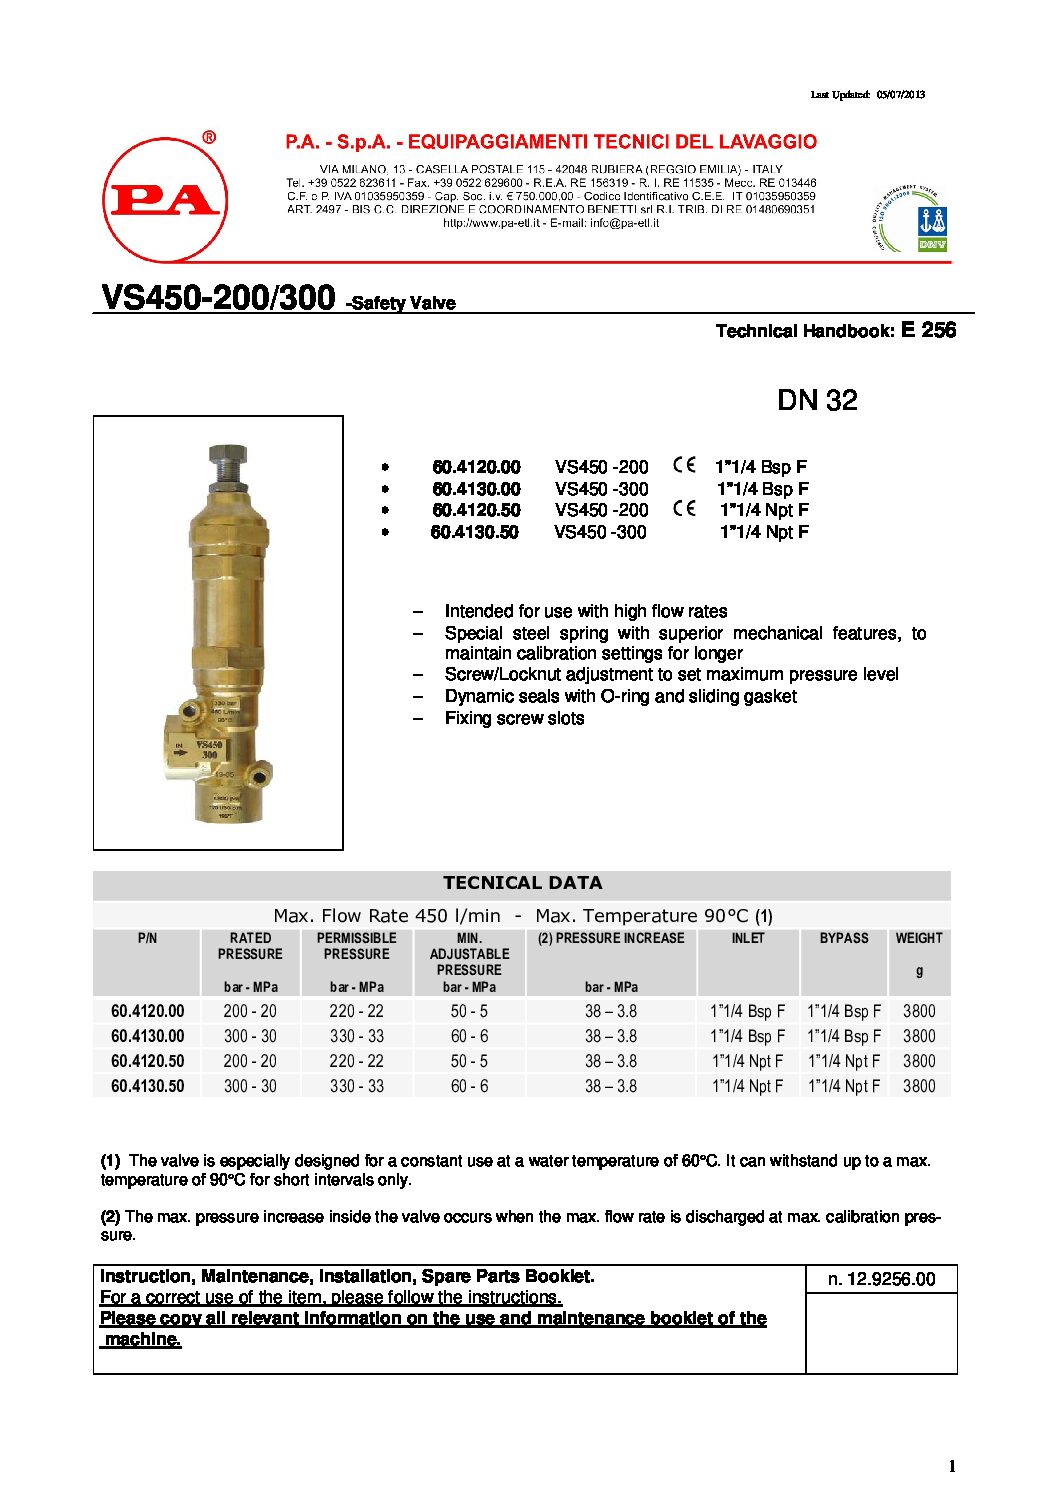 PA VS450 safety valve technical manual